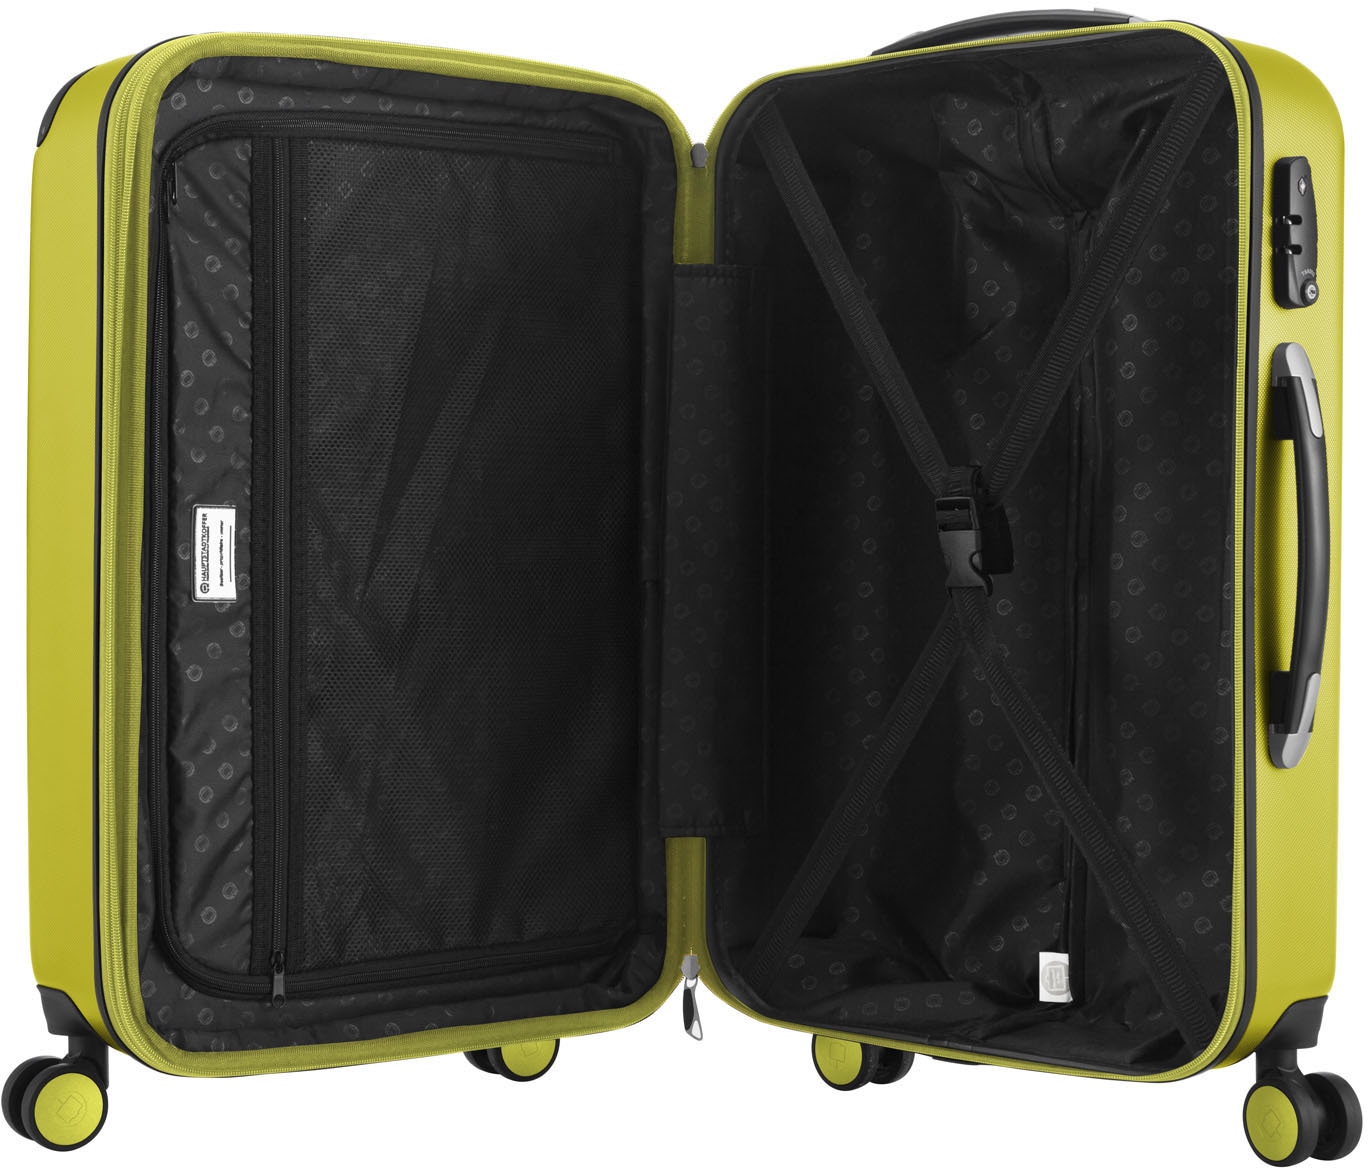 Hauptstadtkoffer Hartschalen-Trolley »Spree, 65 cm, farn«, 4 Rollen, Hartschalen-Koffer Koffer mittel groß Reisegepäck TSA Schloss